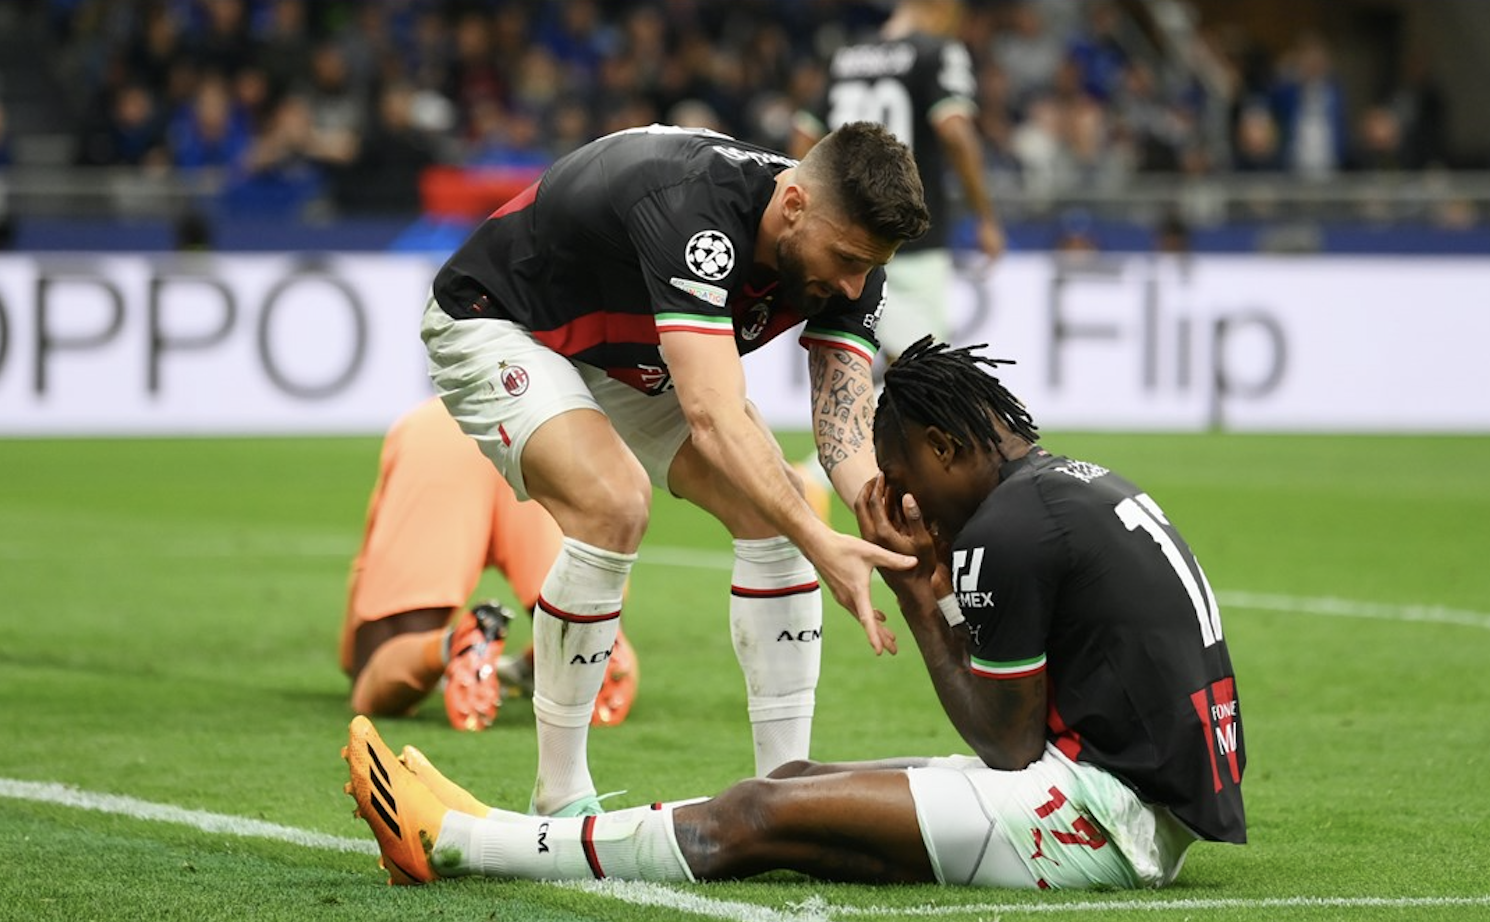 Inter lose Mkhitaryan to muscular injury - Football Italia